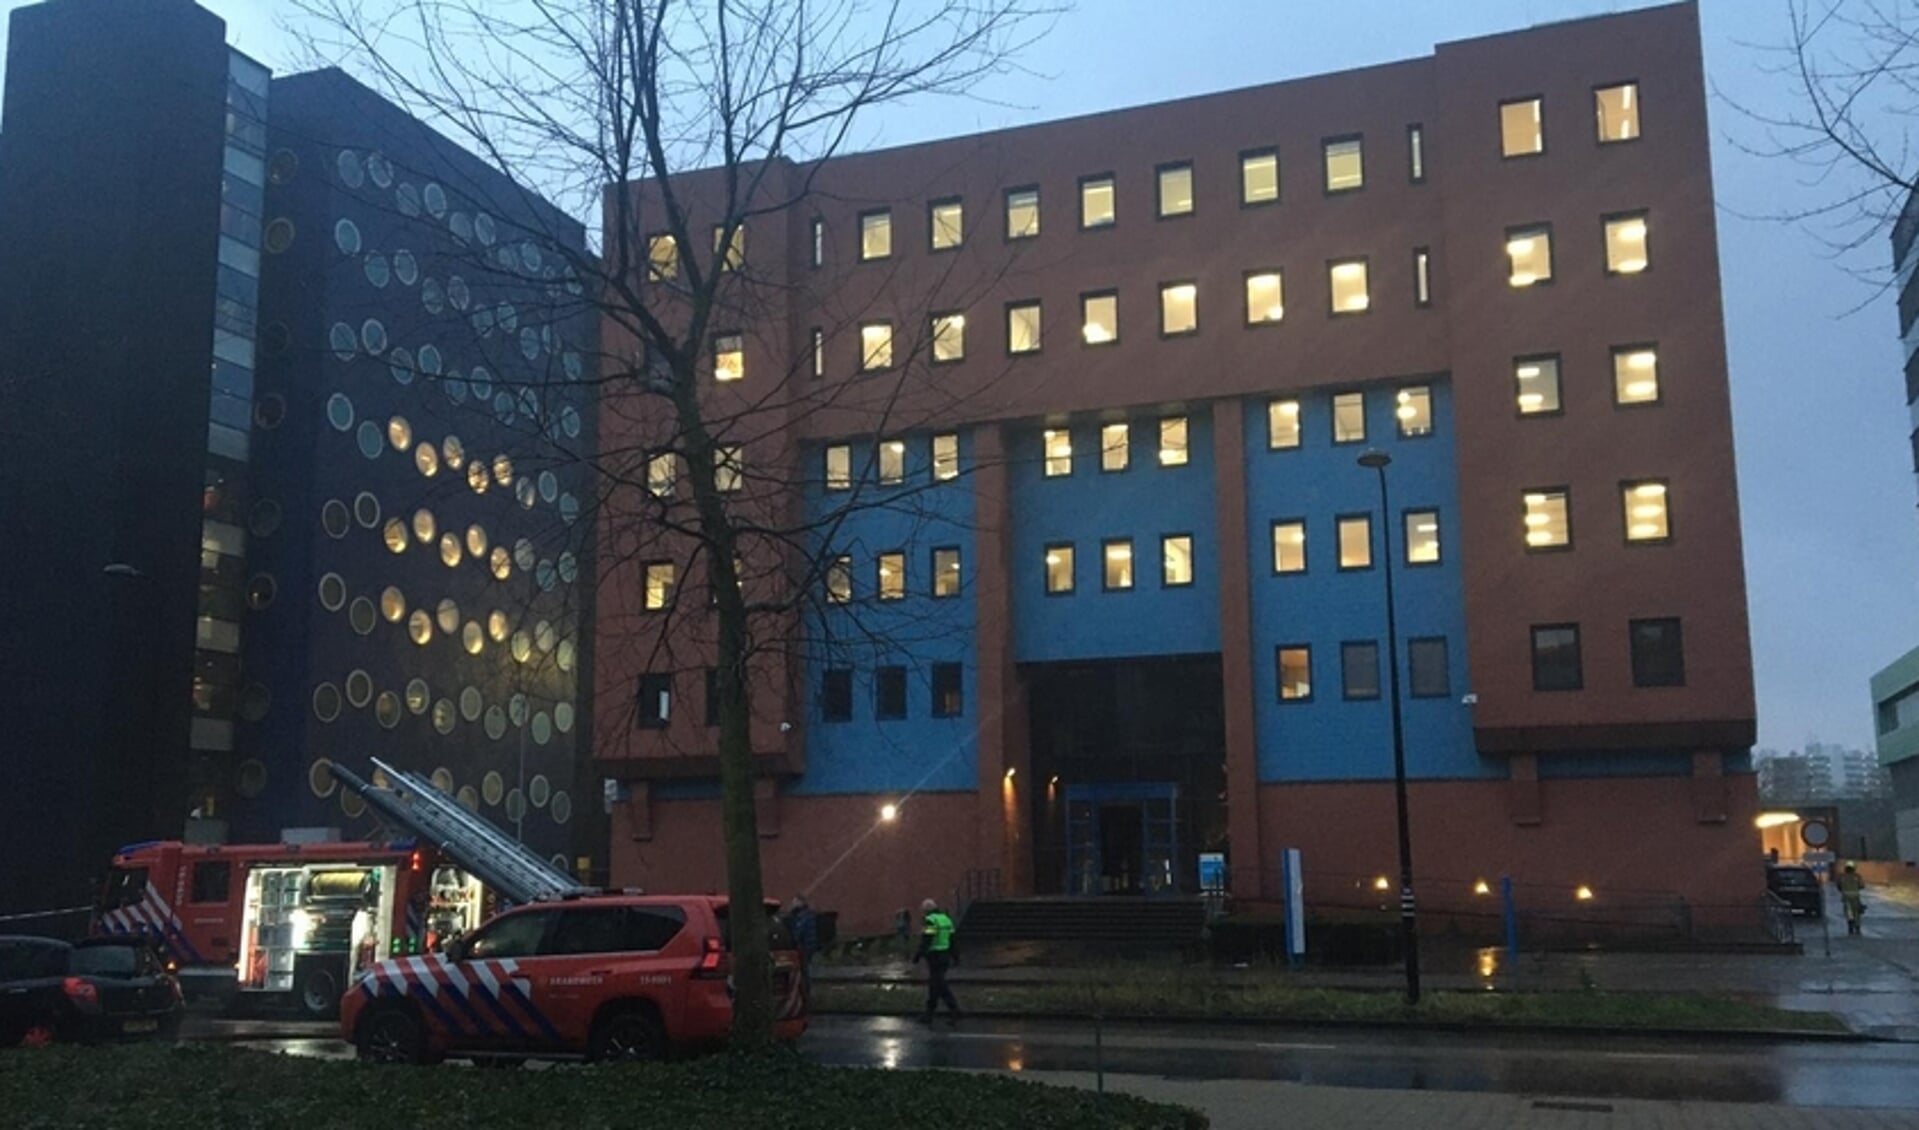 De brandstichting heeft het CBR examencentrum in Rijswijk maanden plat gelegd.